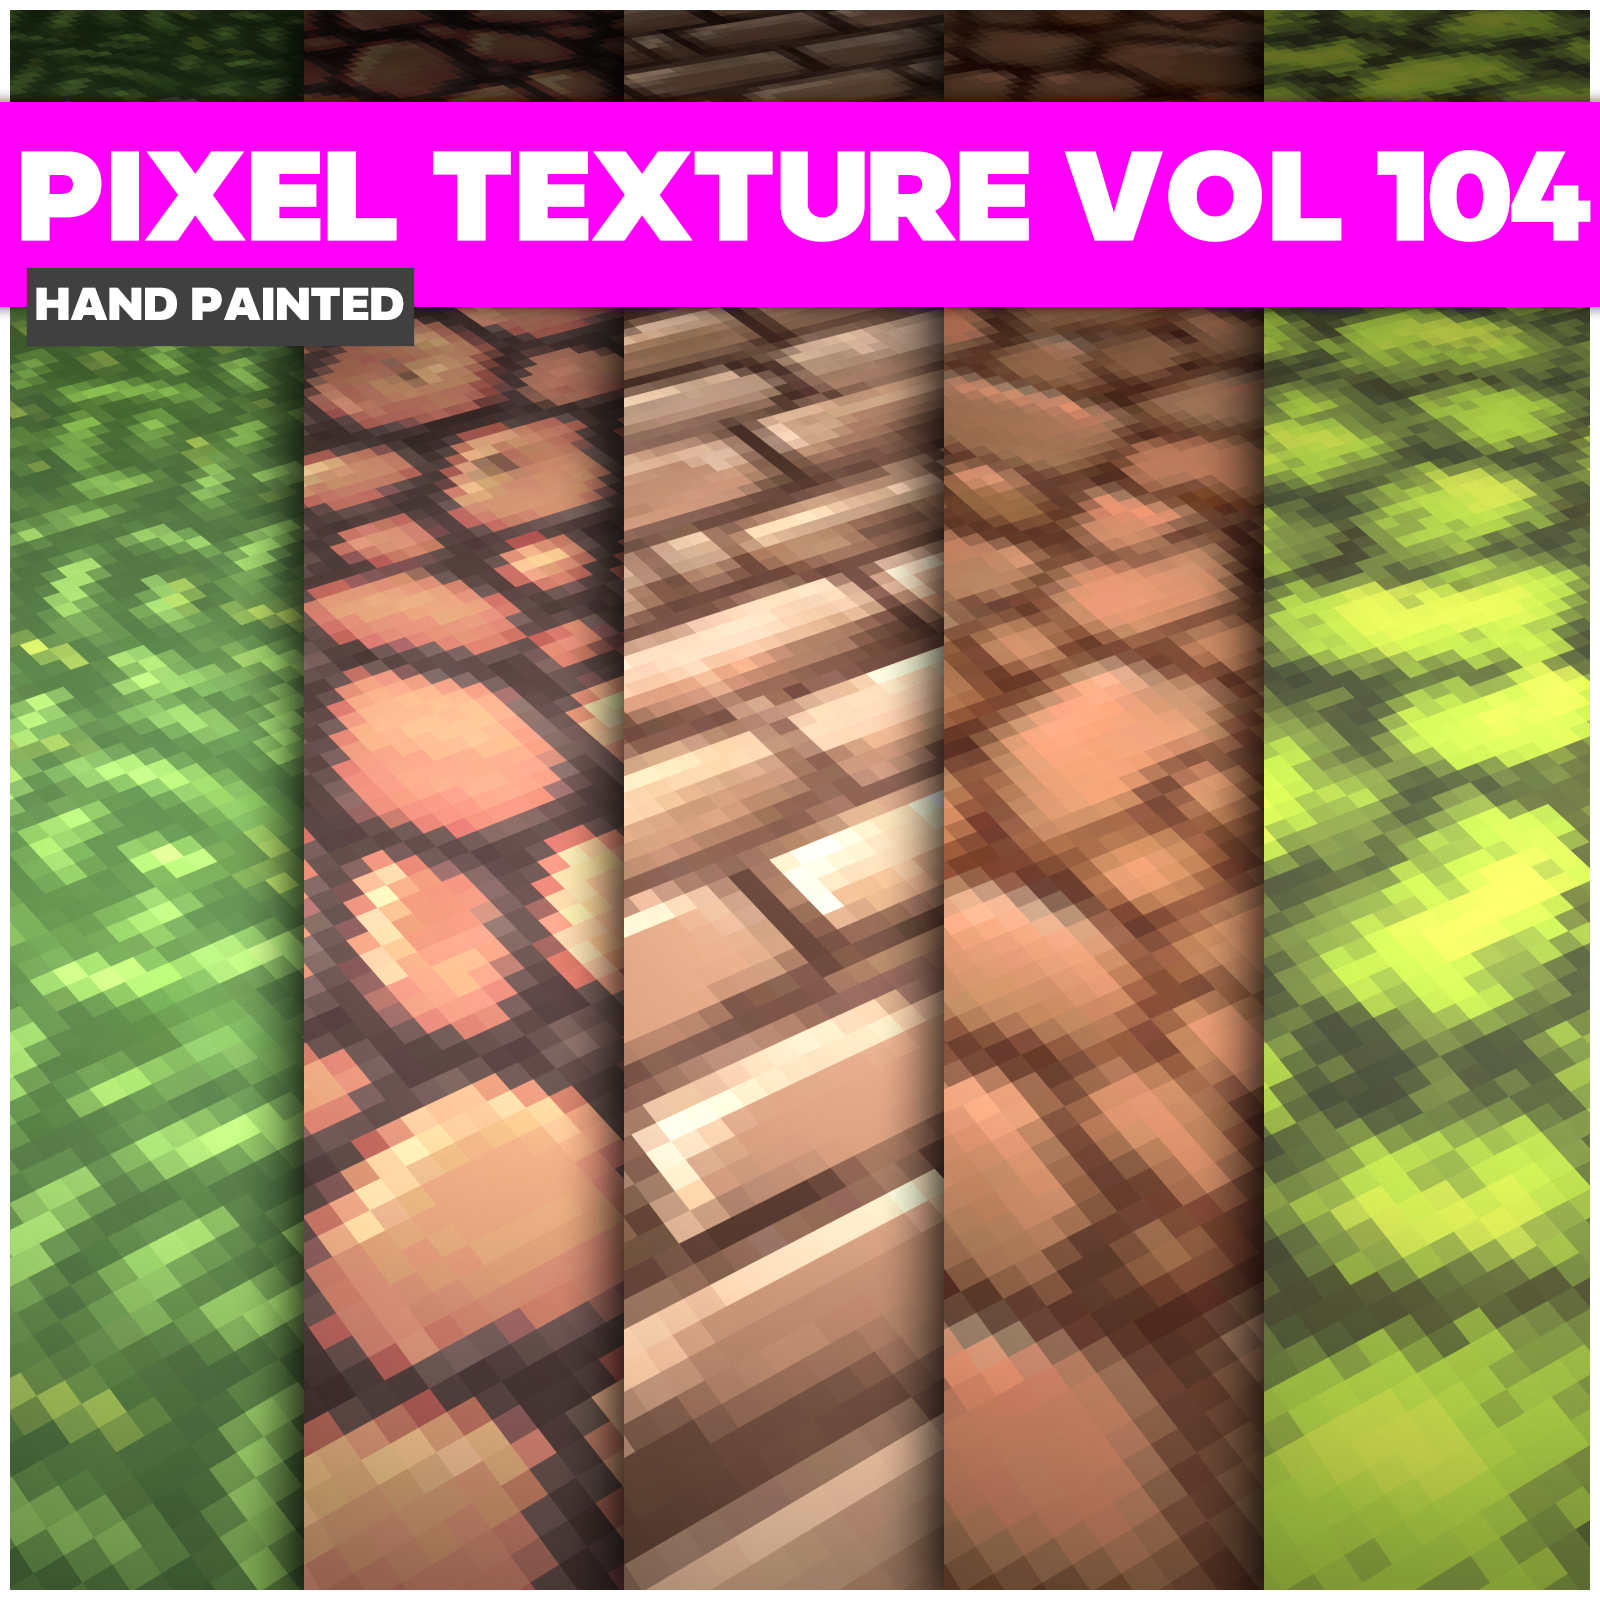 Pixel Vol.104 - Game PBR Textures - LowlyPoly